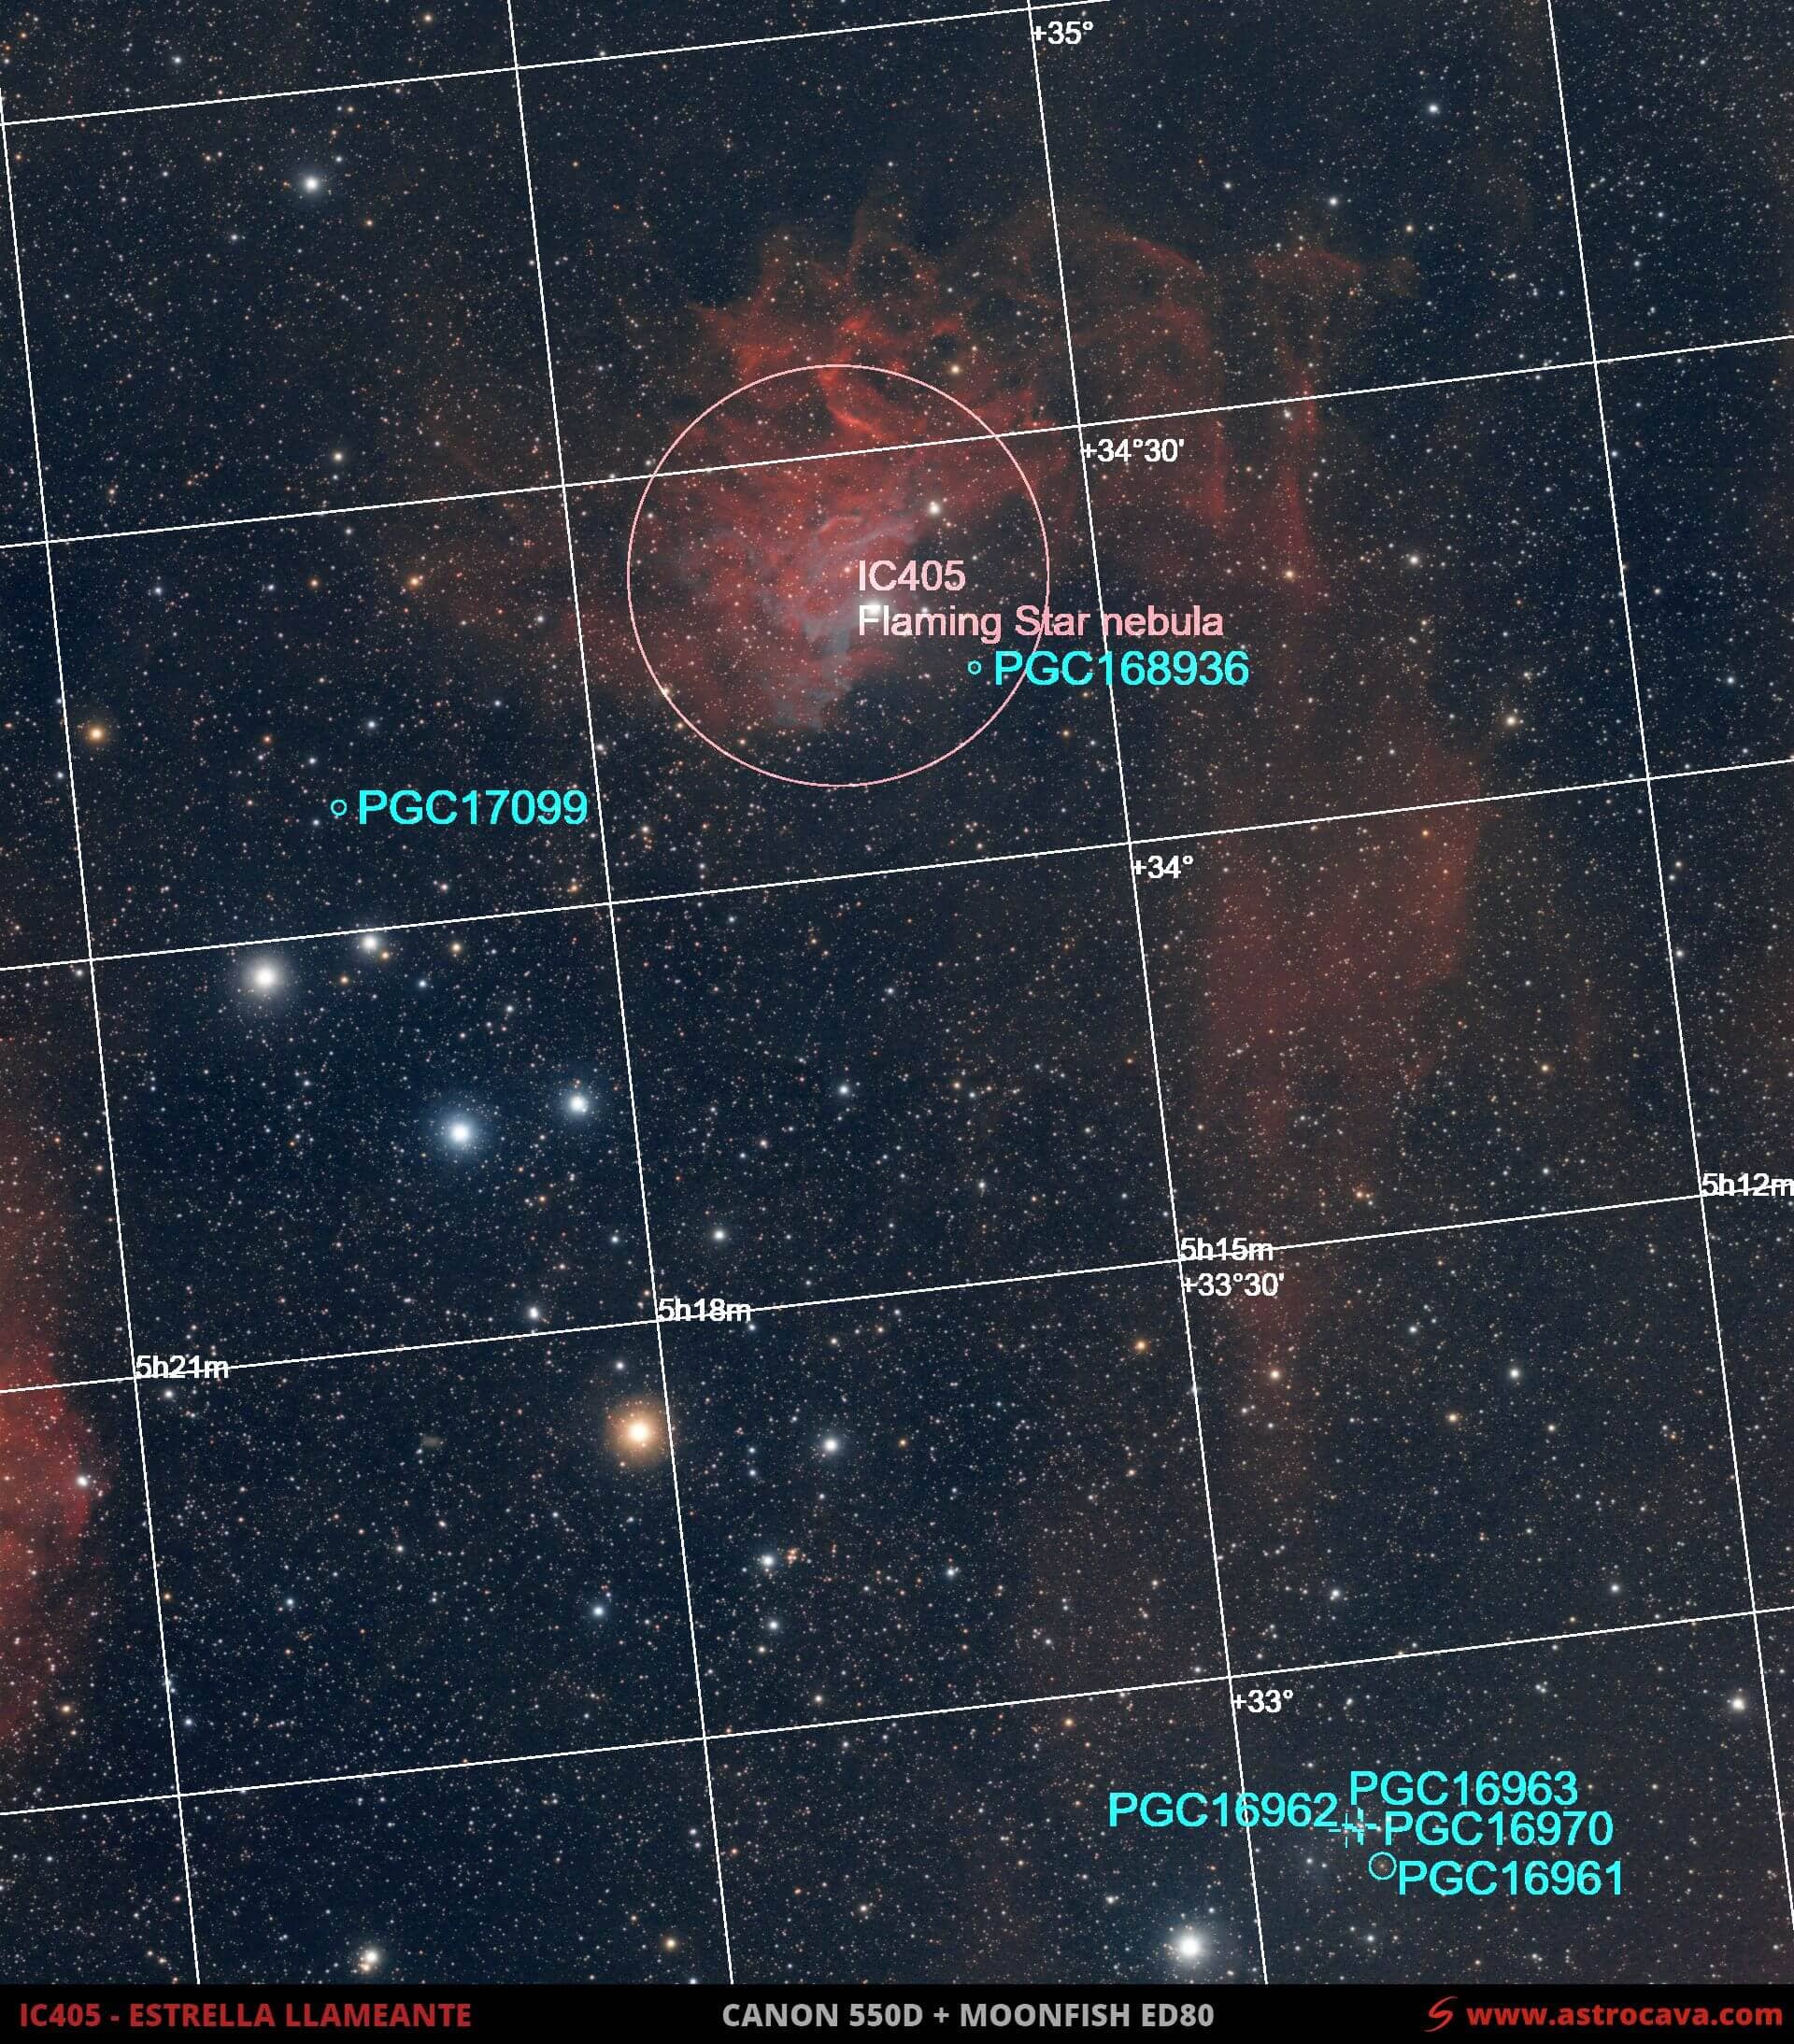 Nebulosa de la estrella llameante (IC405) en Auriga. Versión anotada.